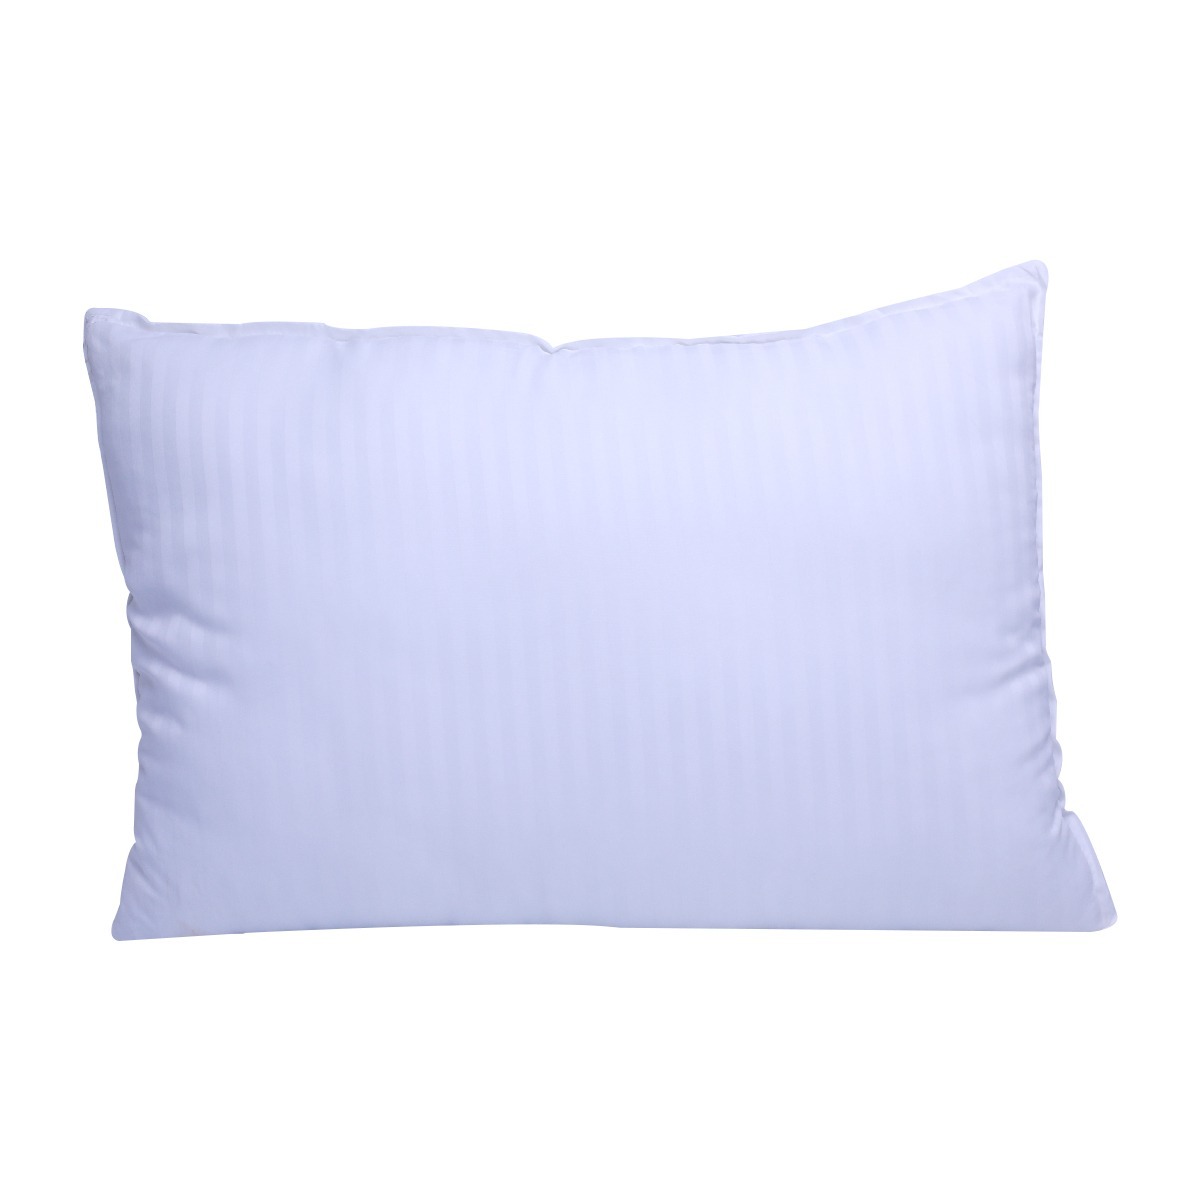 Home Well Fiber Pillow 41x61 cm , Pack Of 2